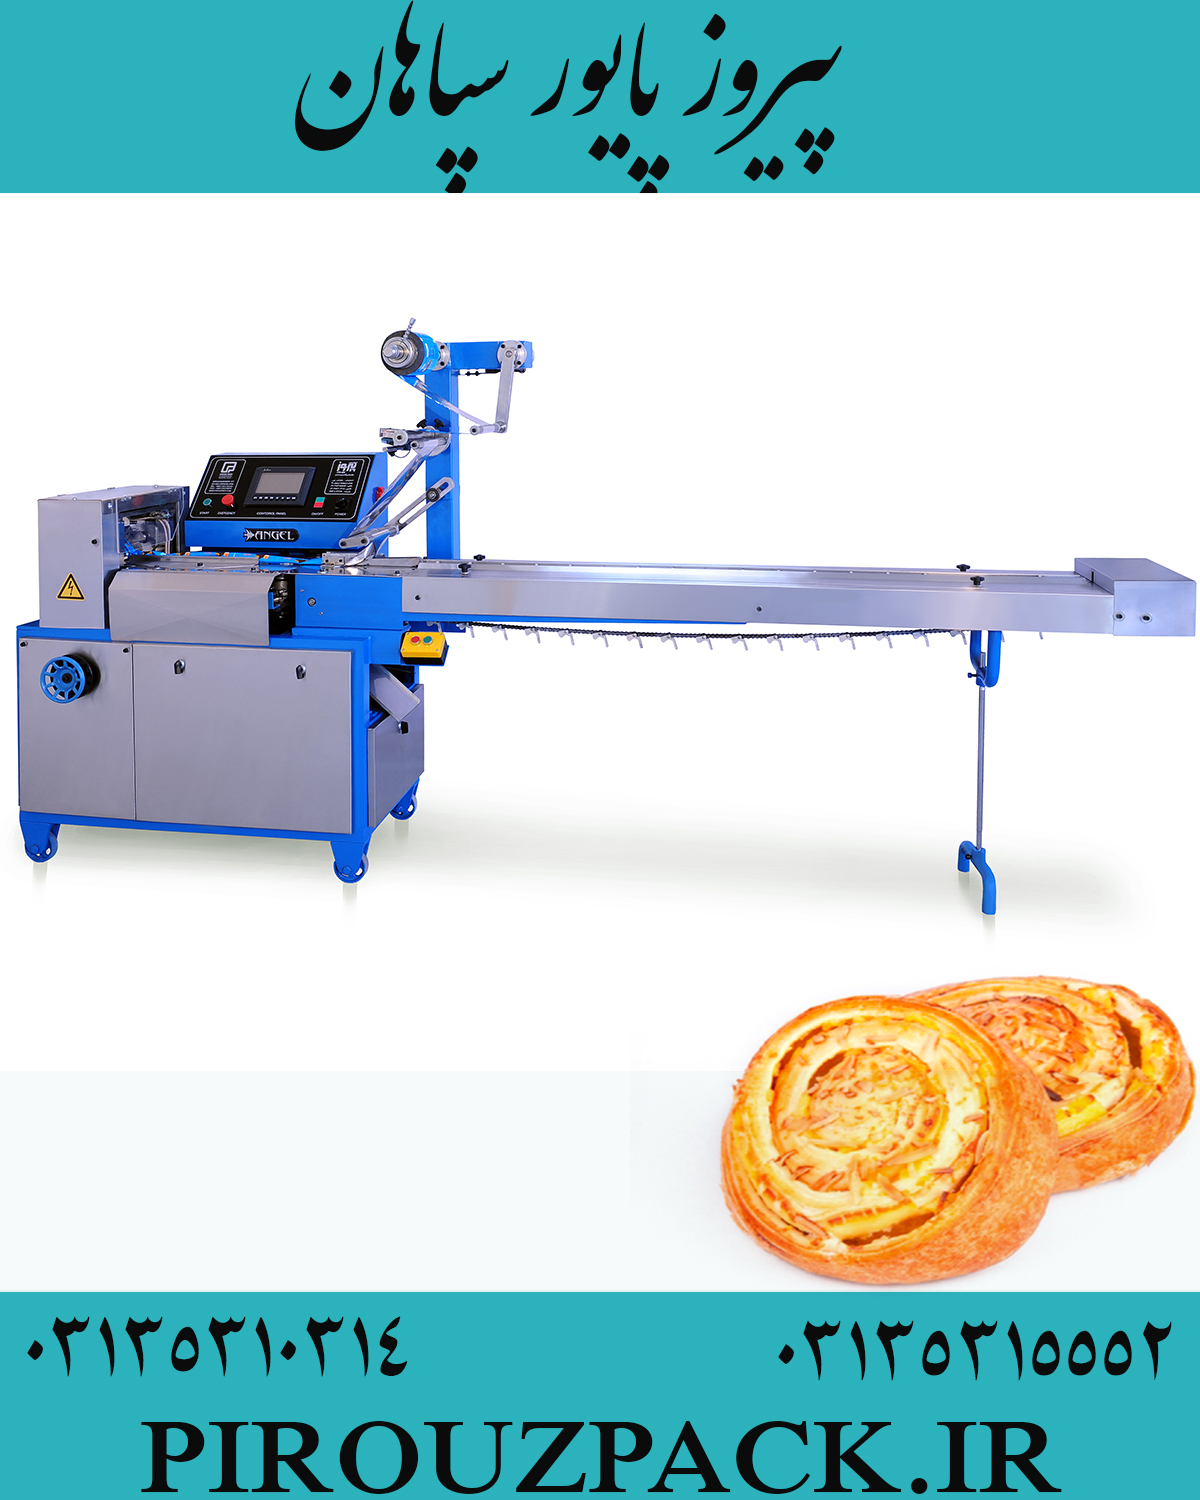 دستگاه بسته بندی نان پیتزا در ماشین سازی پیروزپک